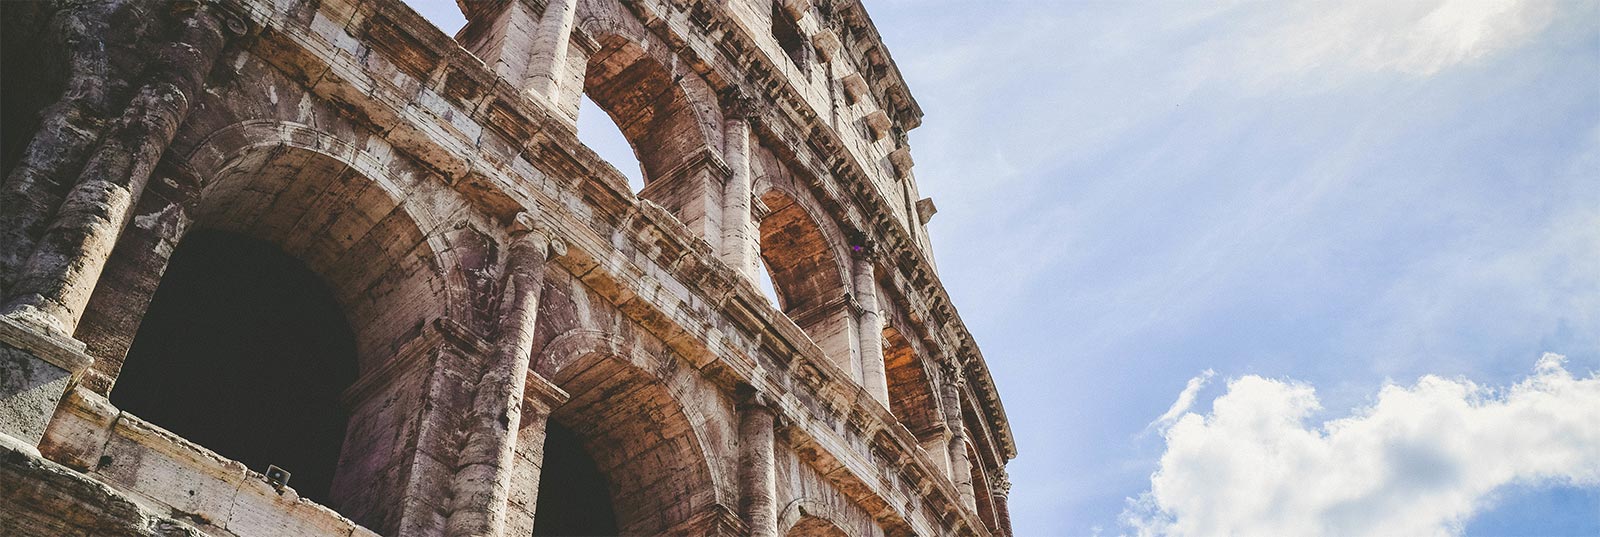 Guía turística de Rome